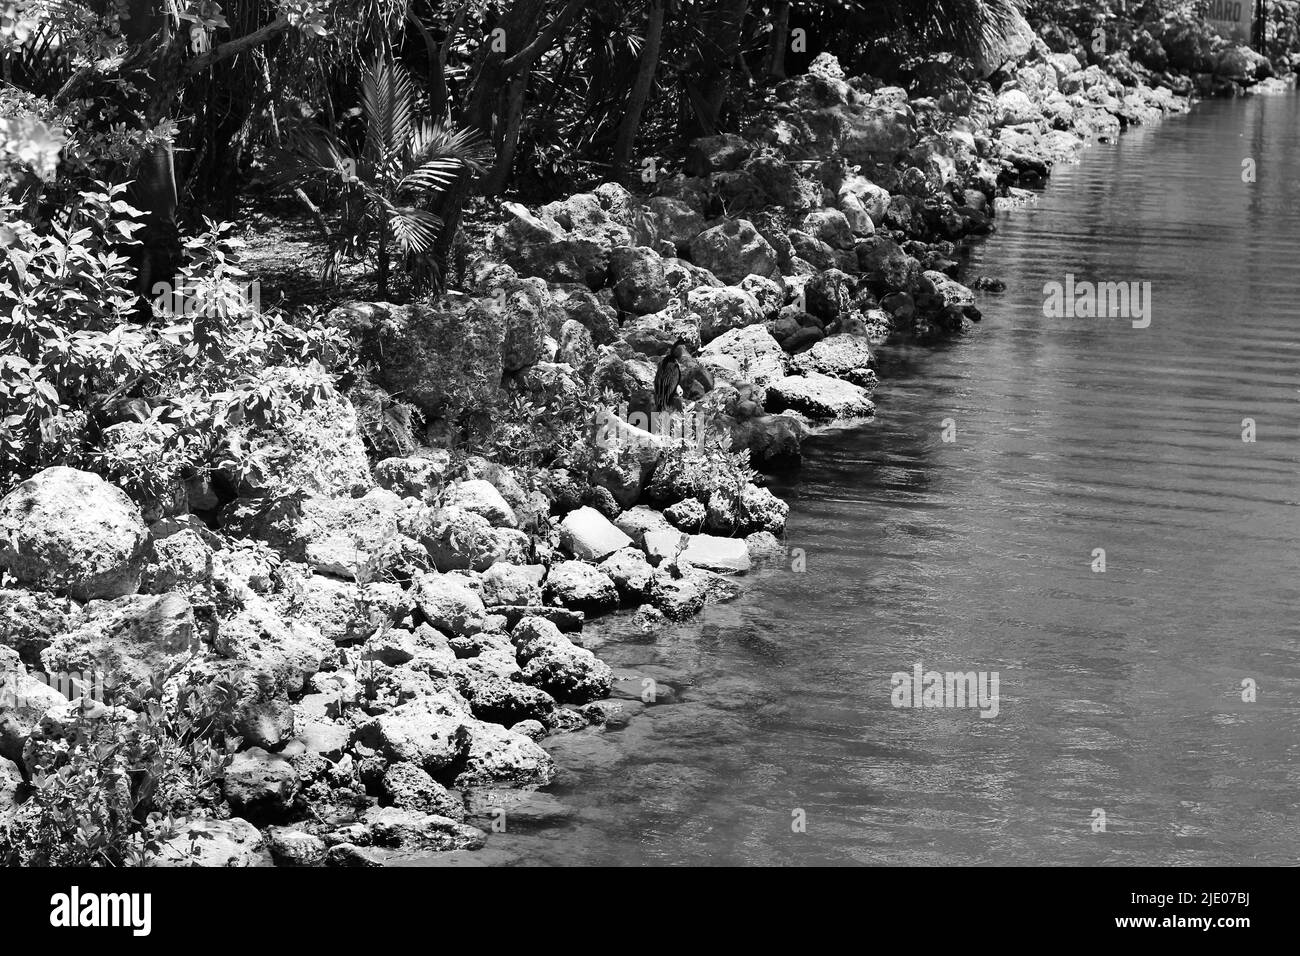 Das felsige Ufer entlang eines Teiches mit frischem, klarem Wasser in Schwarz und Weiß. Stockfoto